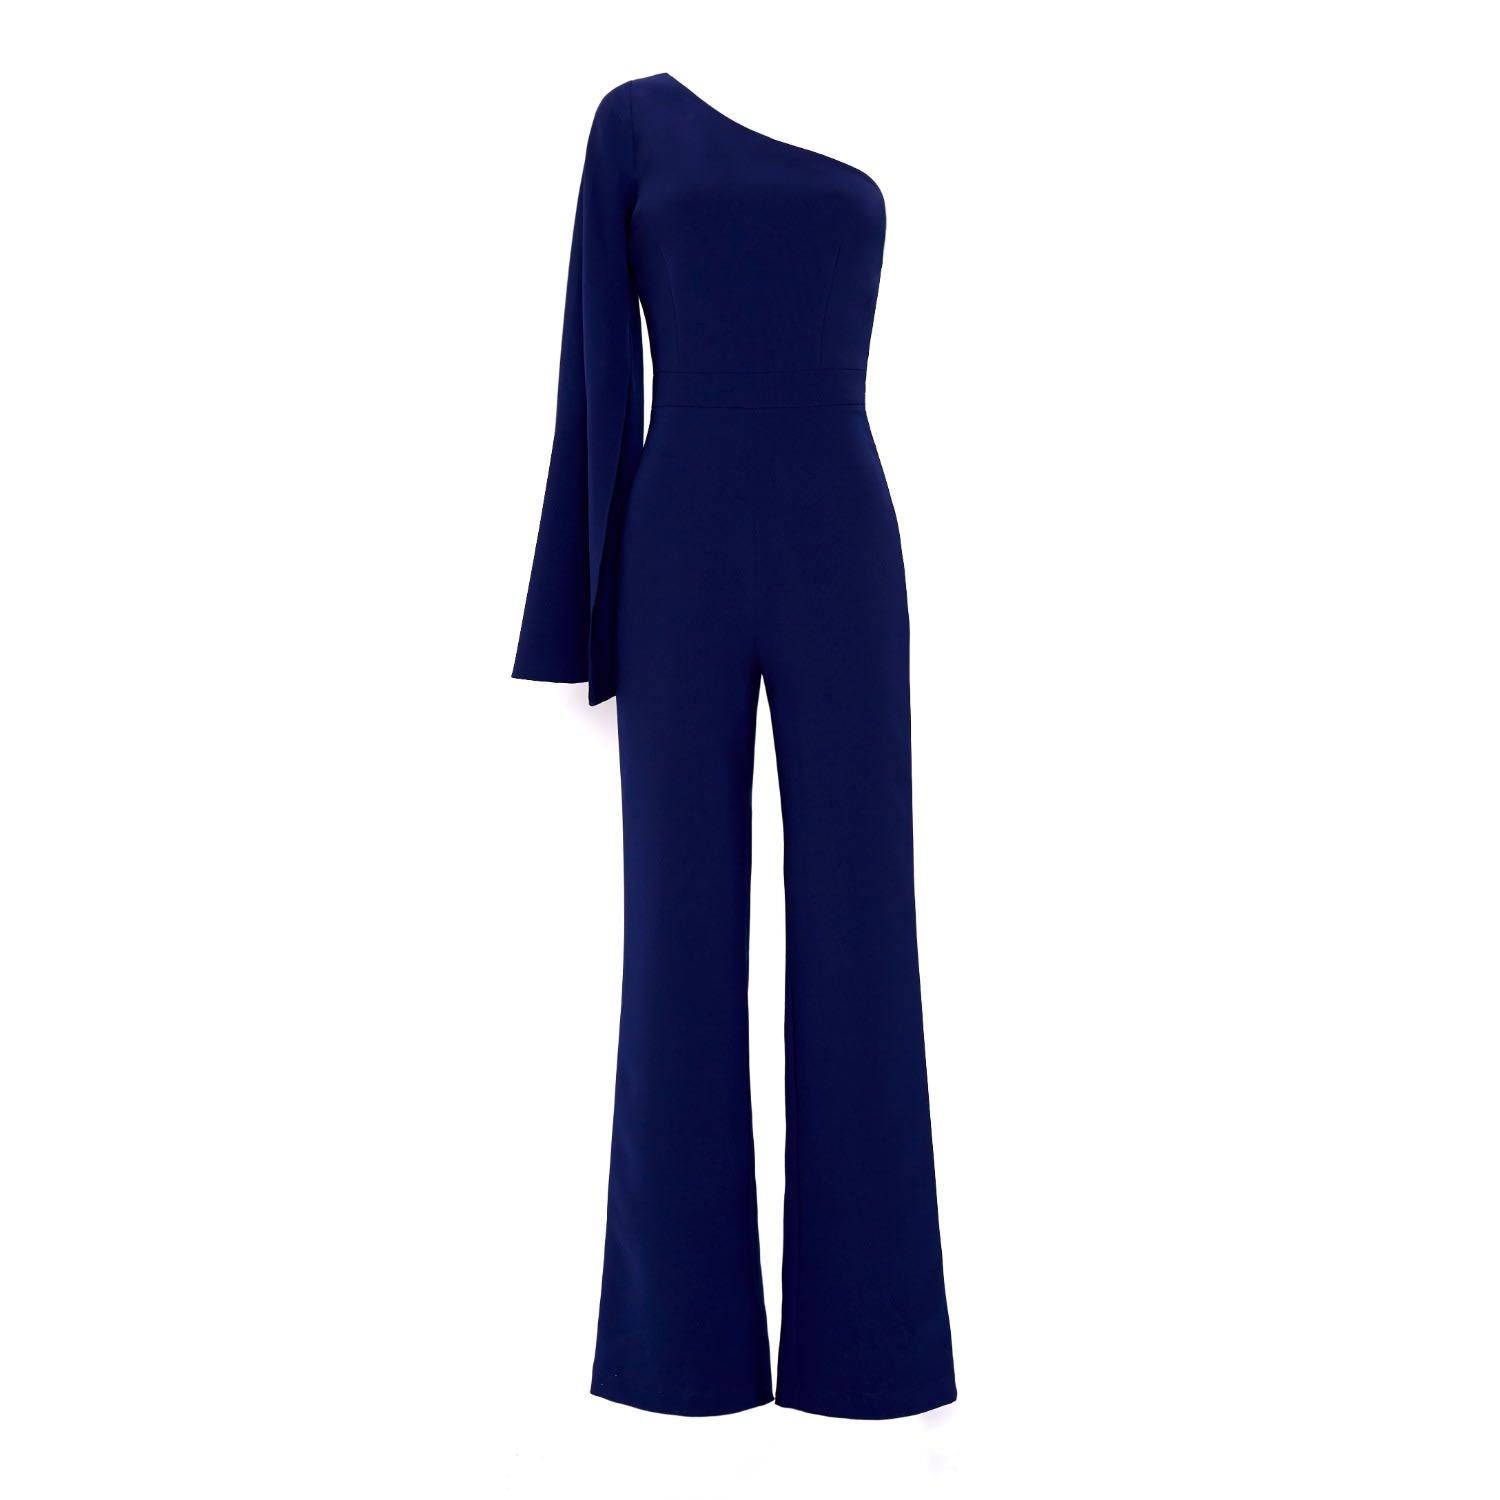 Shop Nomi Fame Women's Amona Royal Blue One Sleeve Asymmetric Neckline Jumpsuit